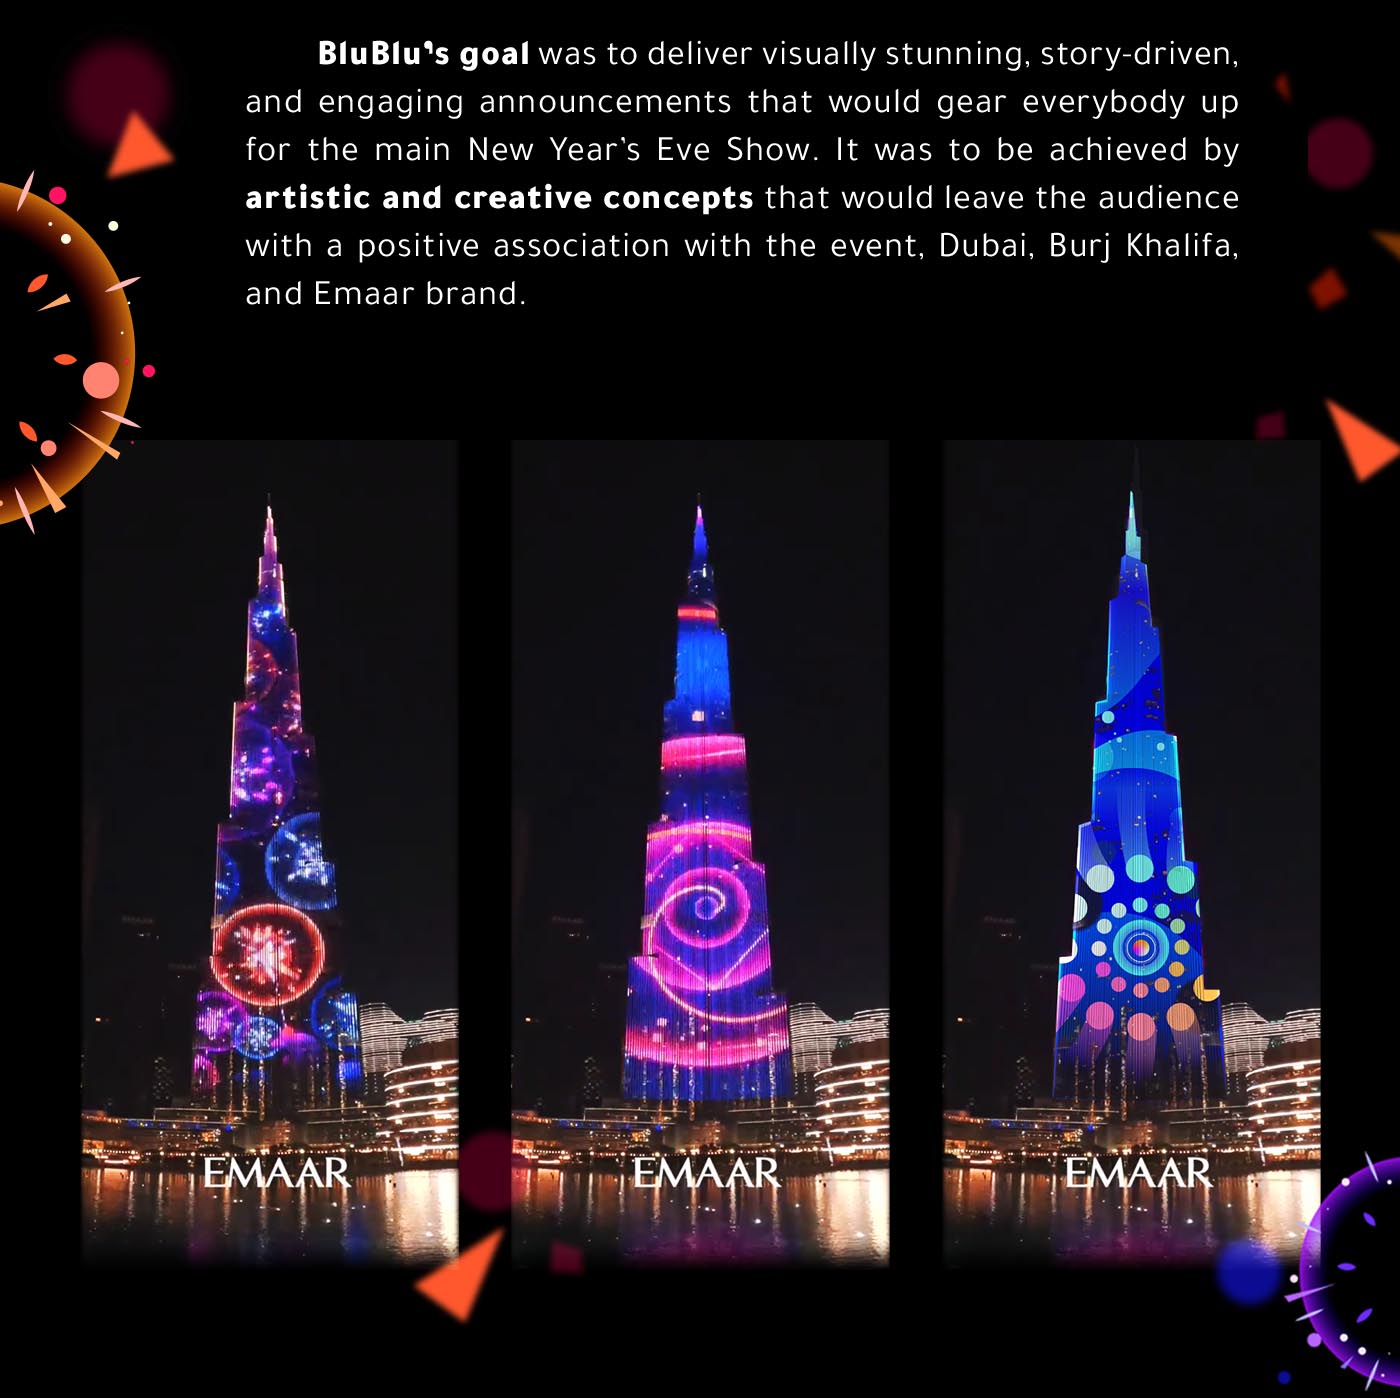 Burj Khalifa - New Year's Eve show